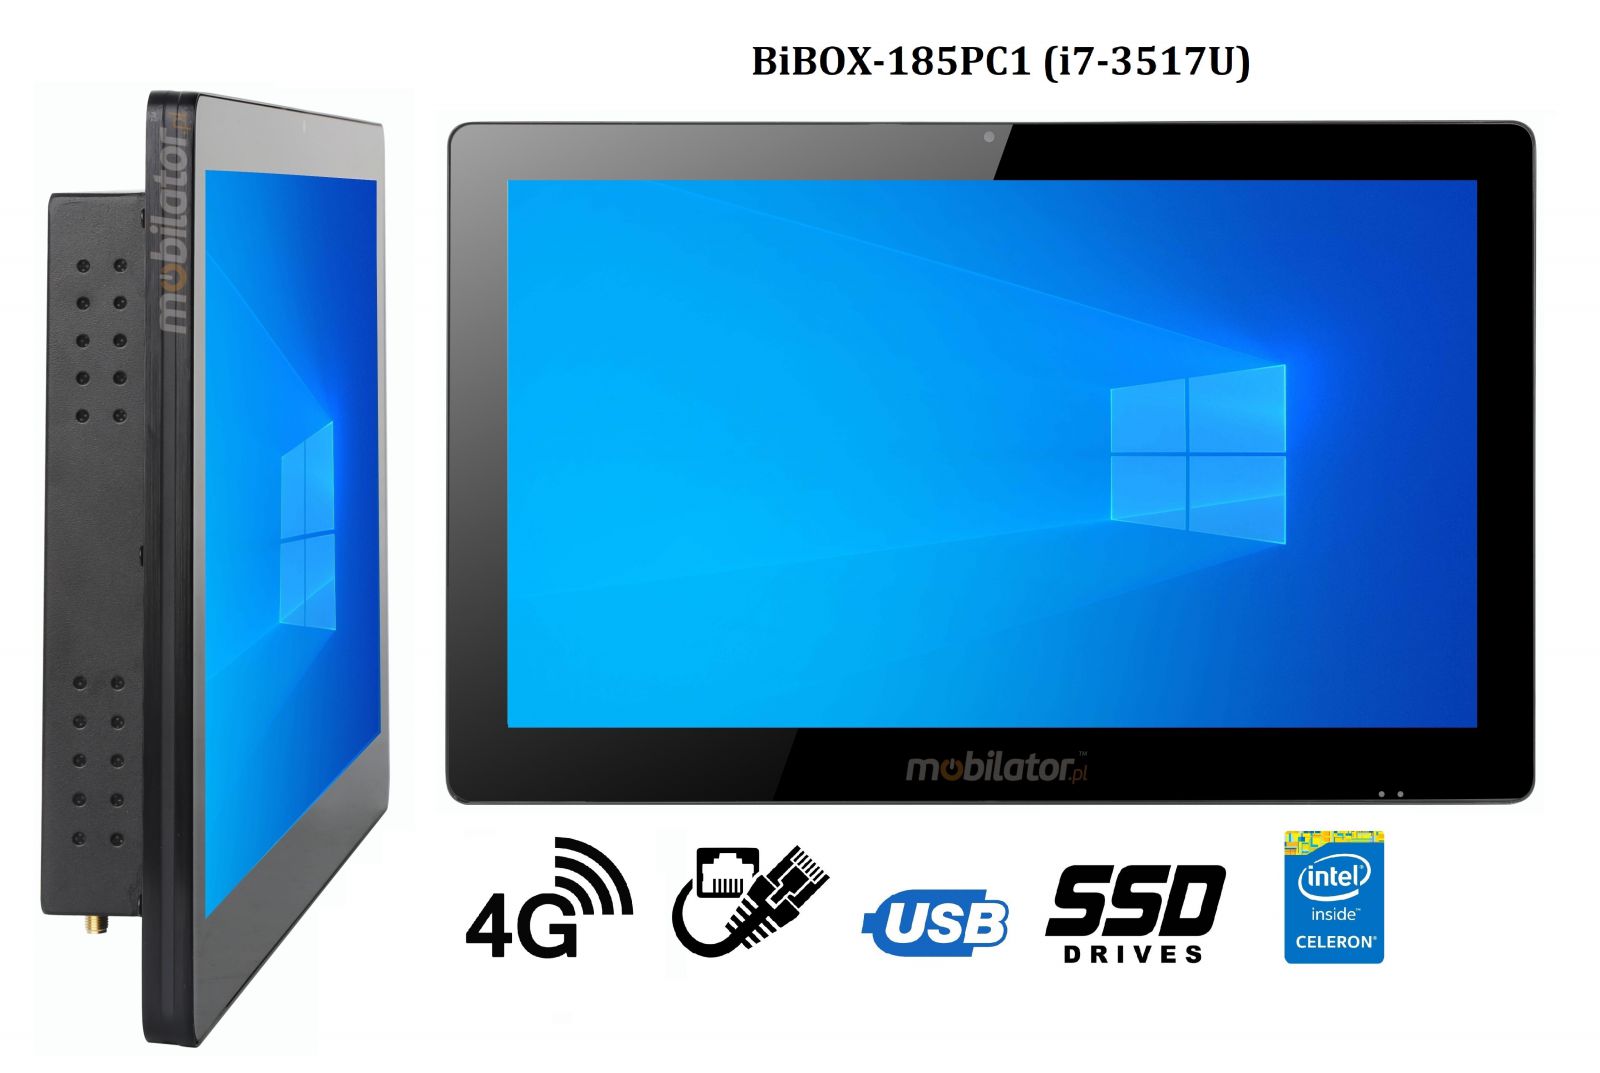 BiBOX-185PC1 (i7-3517U) v.5 - Wzmocniony panel komputerowy z IP65 (odporno woda i py) z dyskiem SSD 256 GB, technologi 4G oraz WiFi